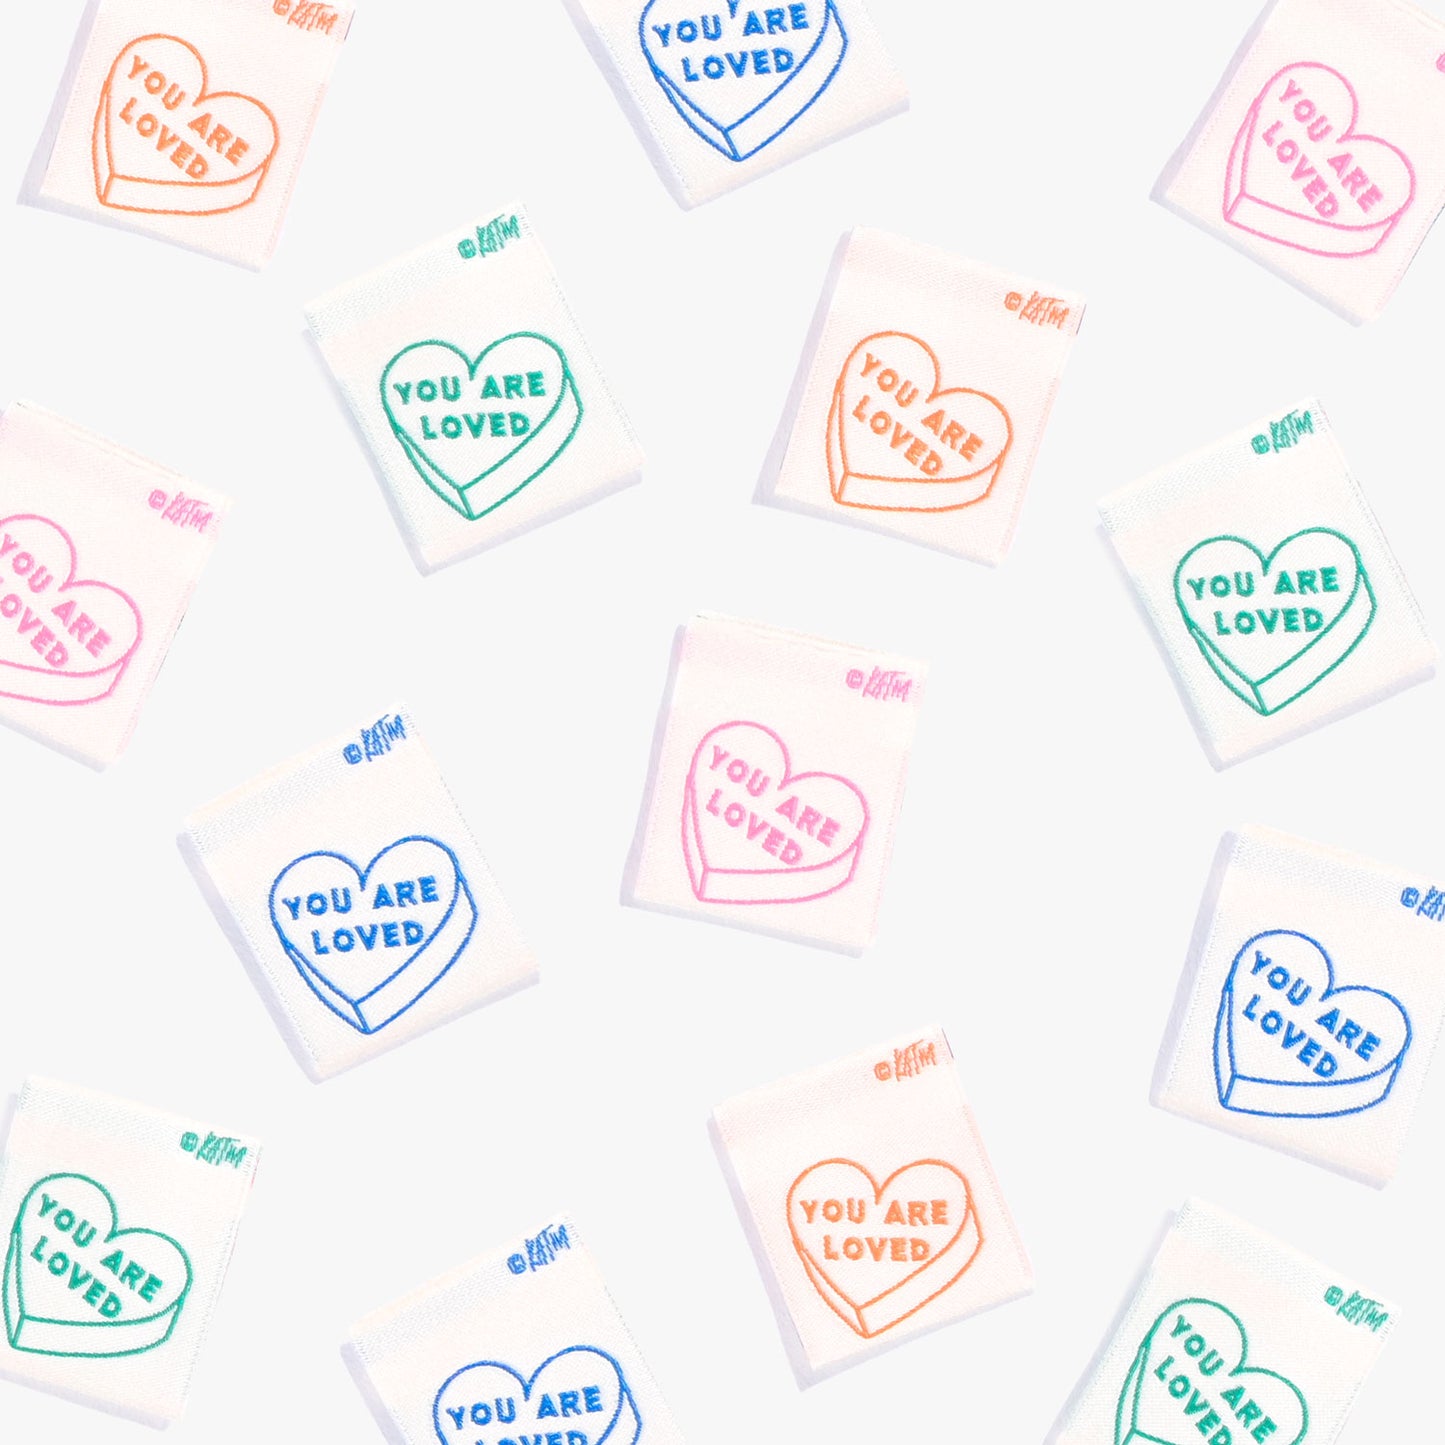 Labels van Kylie and the Machine verspreid op een witte achtergrond. Op de labels staan hartjes en de tekst 'You are Loved' in de kleuren blauw, groen, roze en oranje.